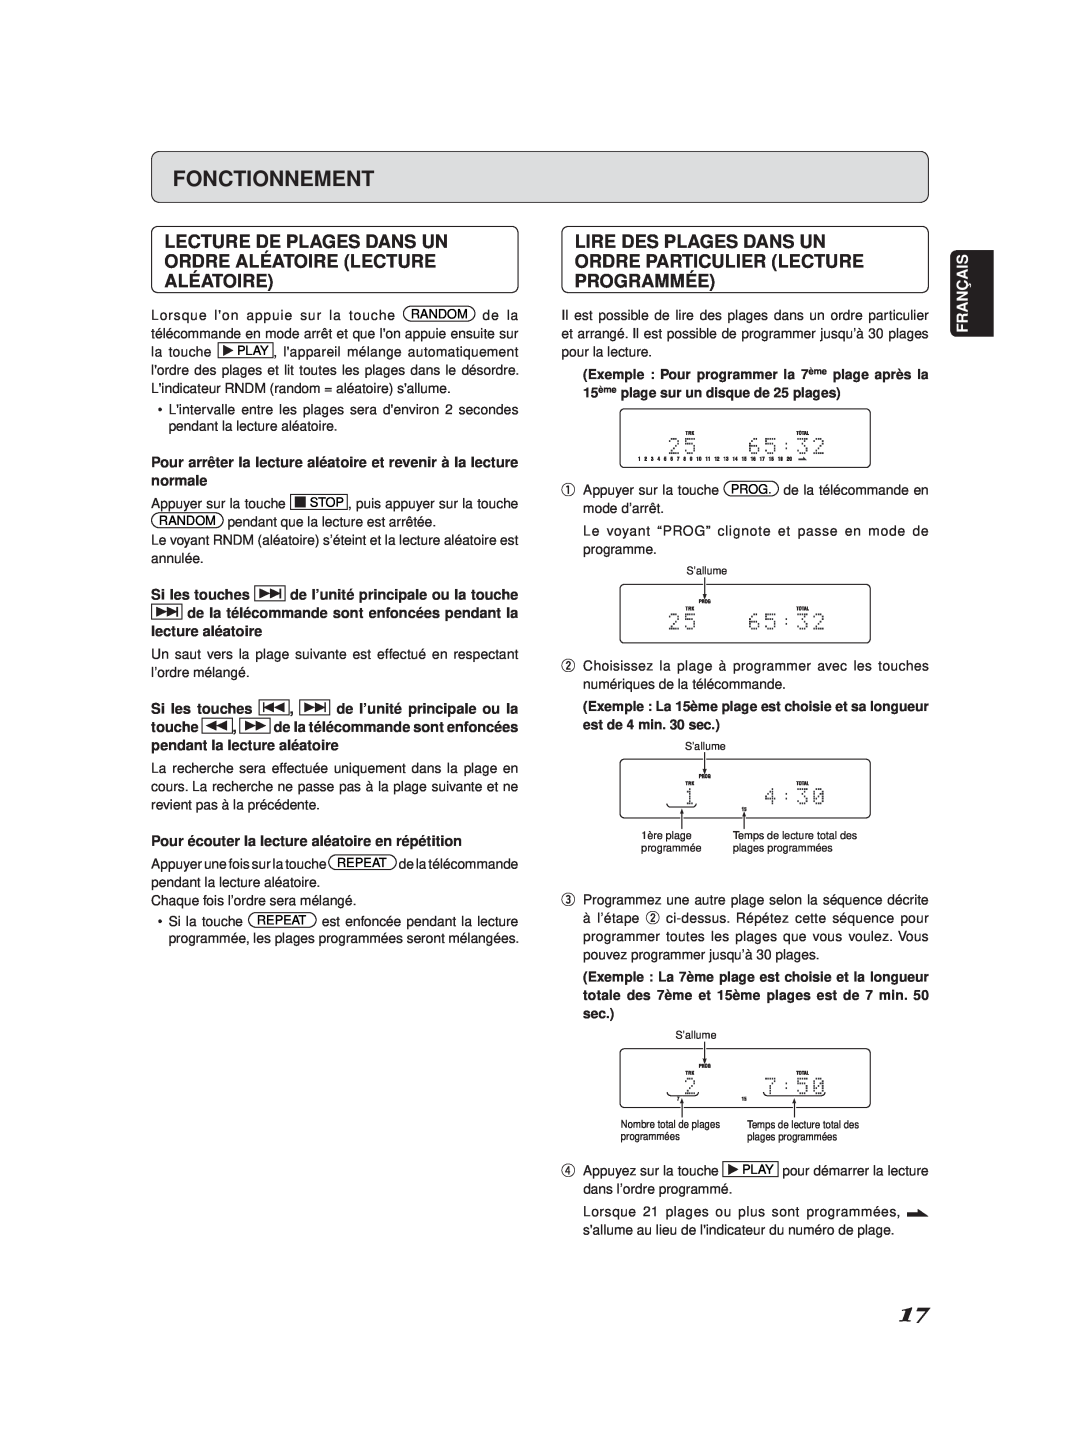 Marantz SA-11S2 manual Lire Des Plages Dans Un, Ordre Particulier Lecture, Programmée, Fonctionnement 